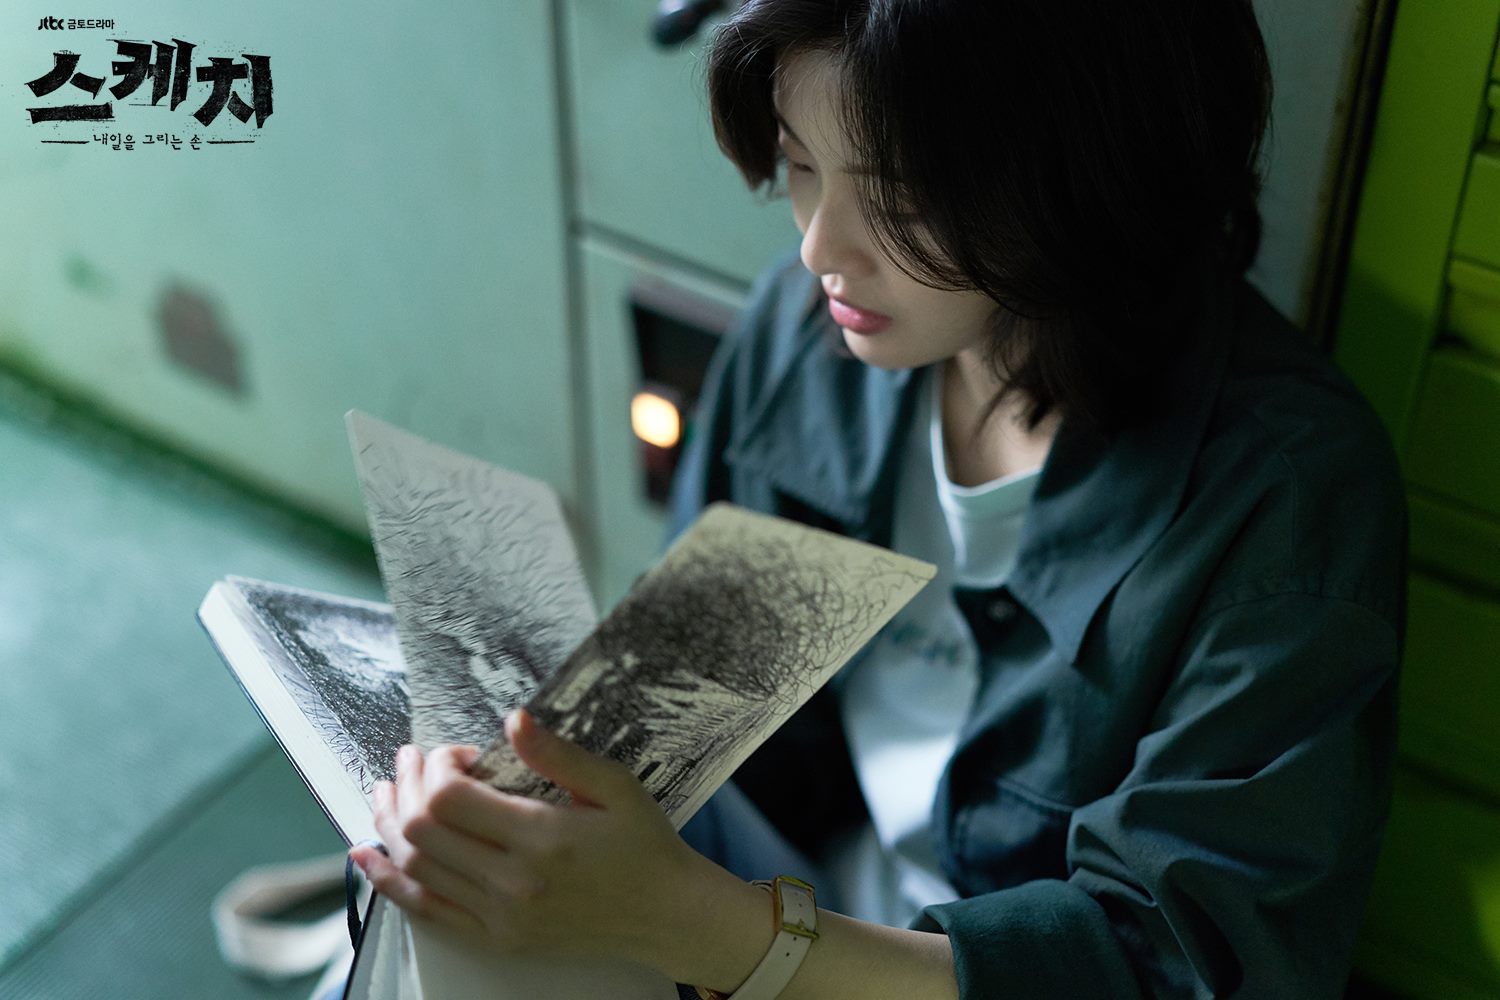 Phim hay nhất của Lee Sun Bin: Phác họa kẻ sát nhân - Sketch (2018)